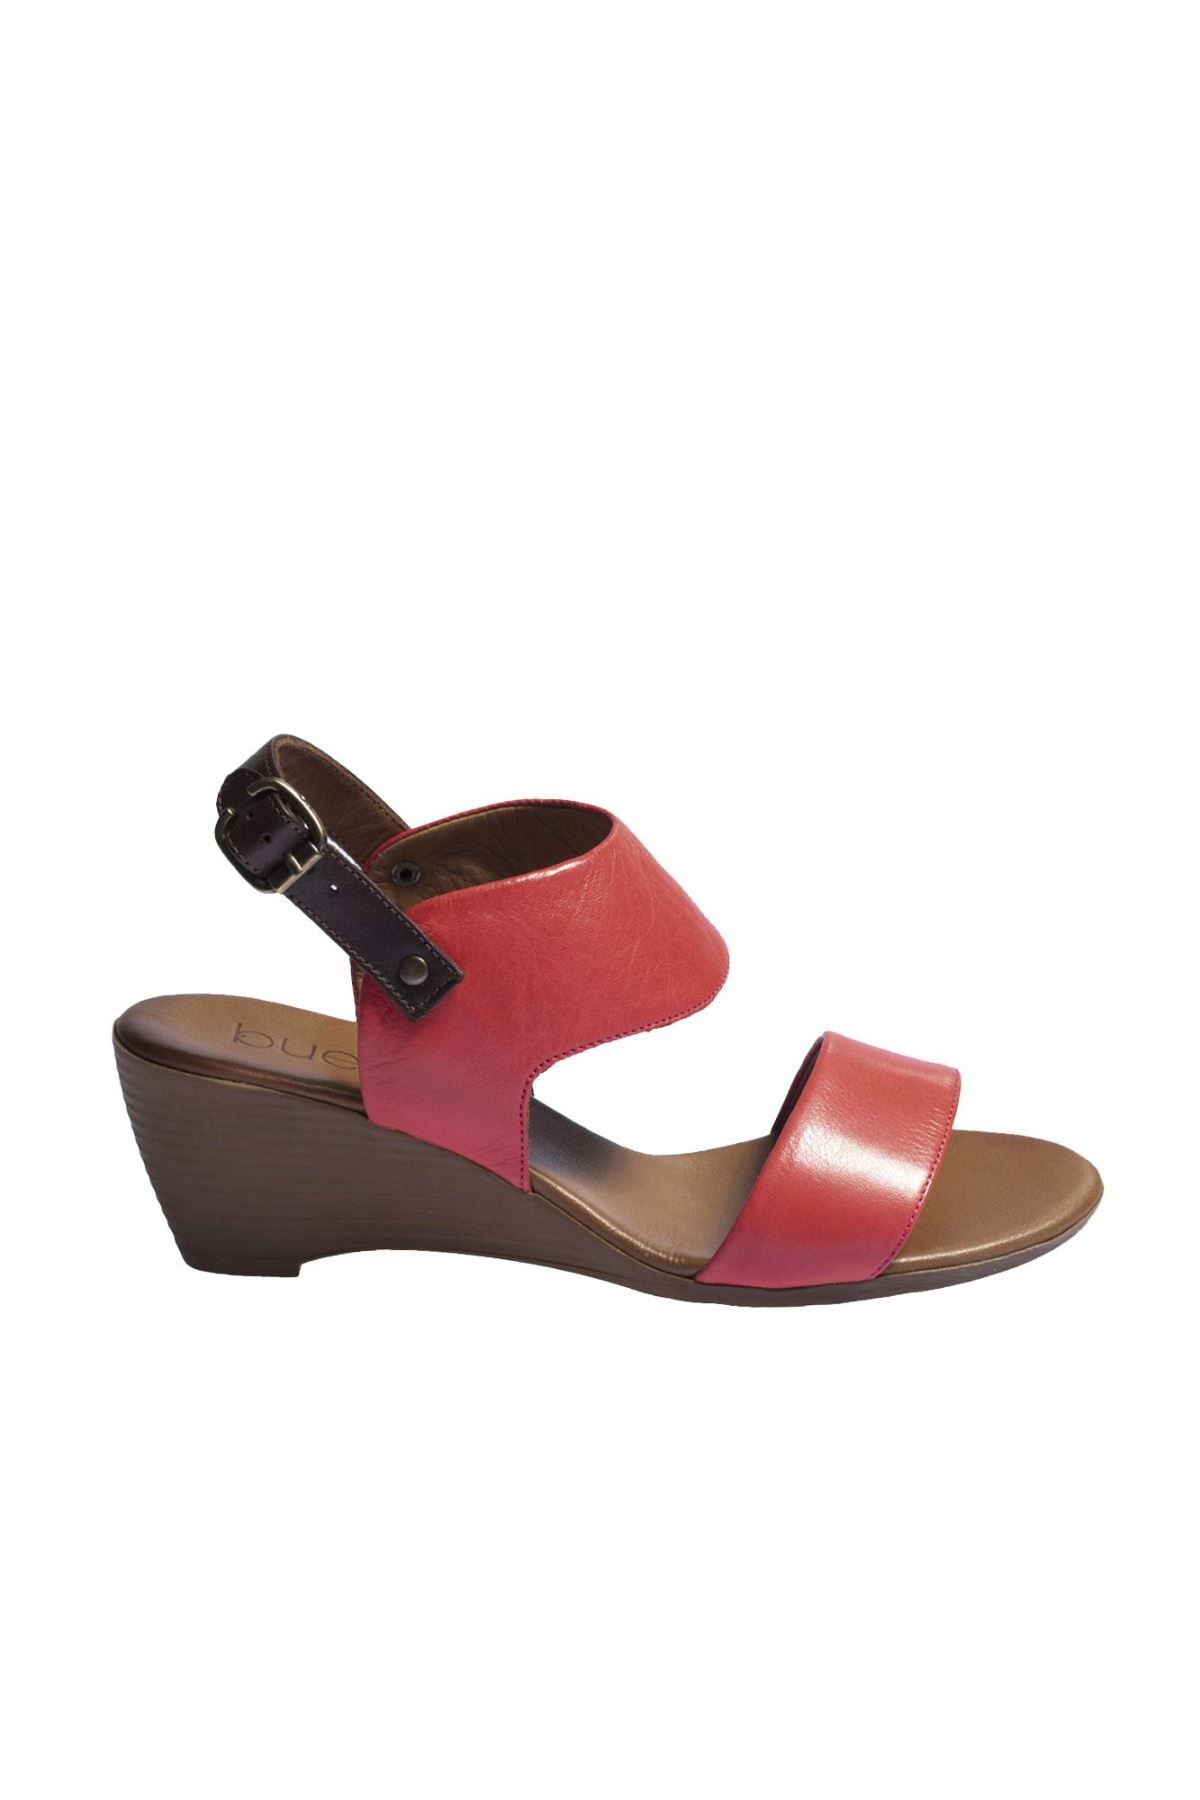 BUENO Shoes Kırmızı Deri Kadın Dolgu Topuklu Sandalet